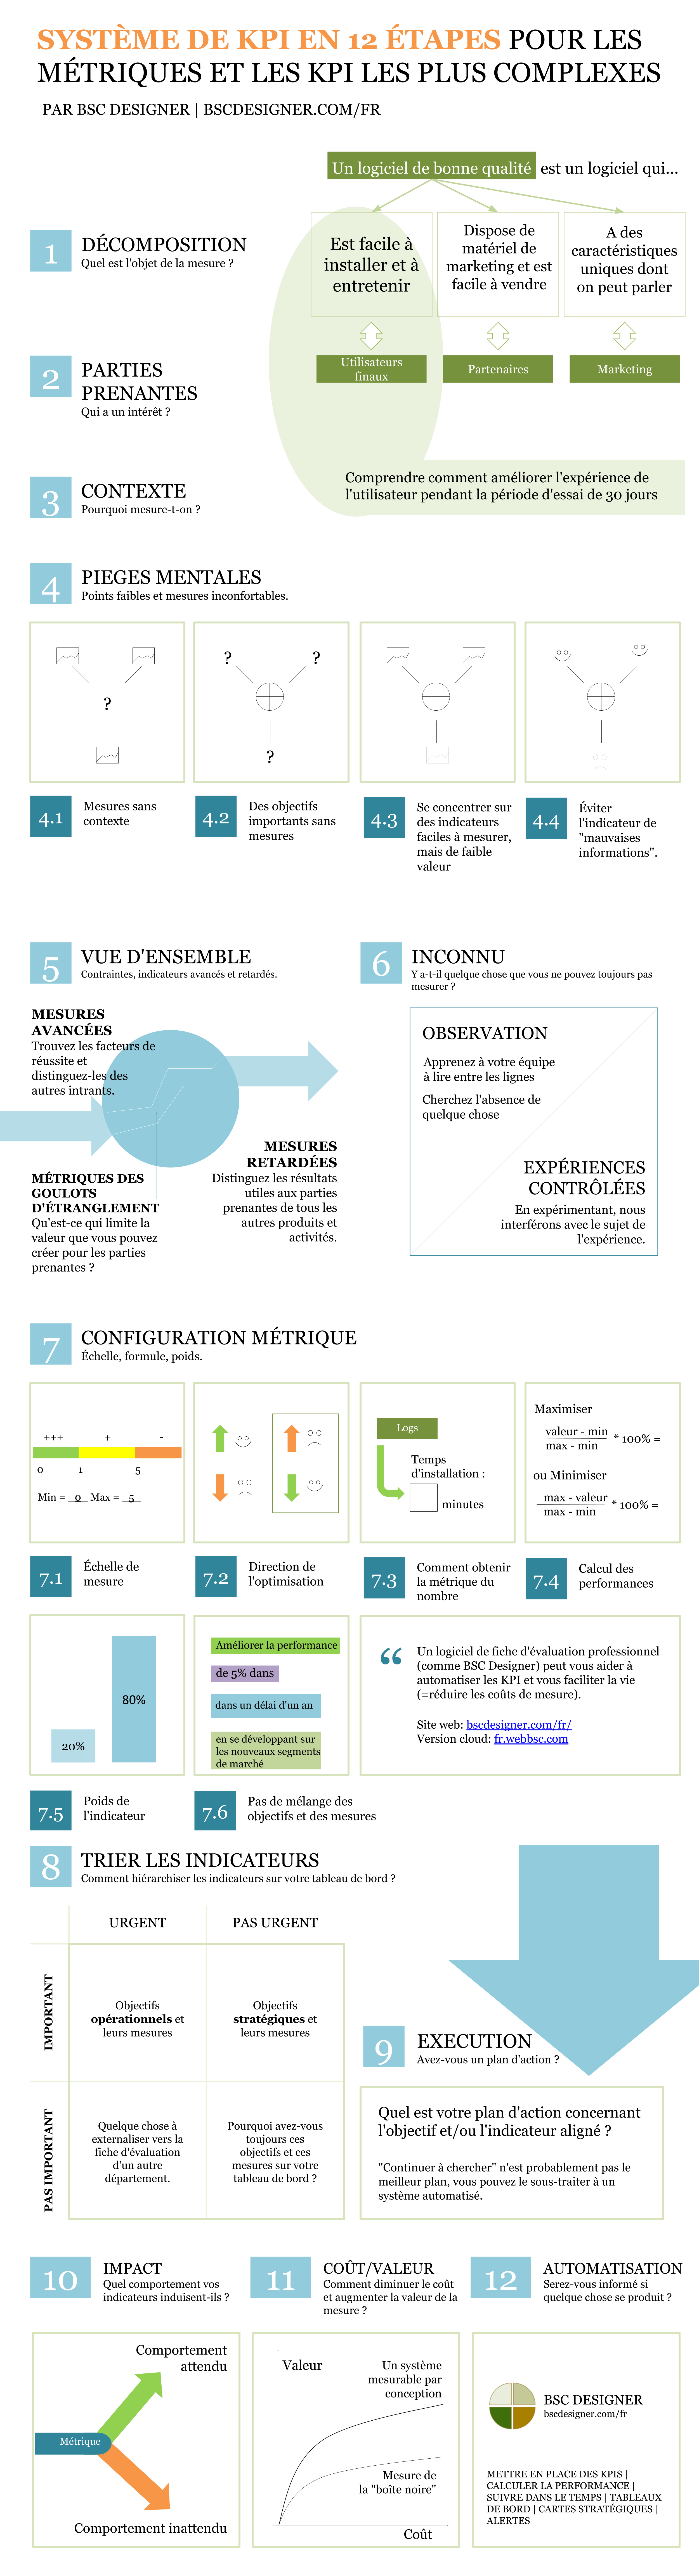 Système de KPI en 12 étapes